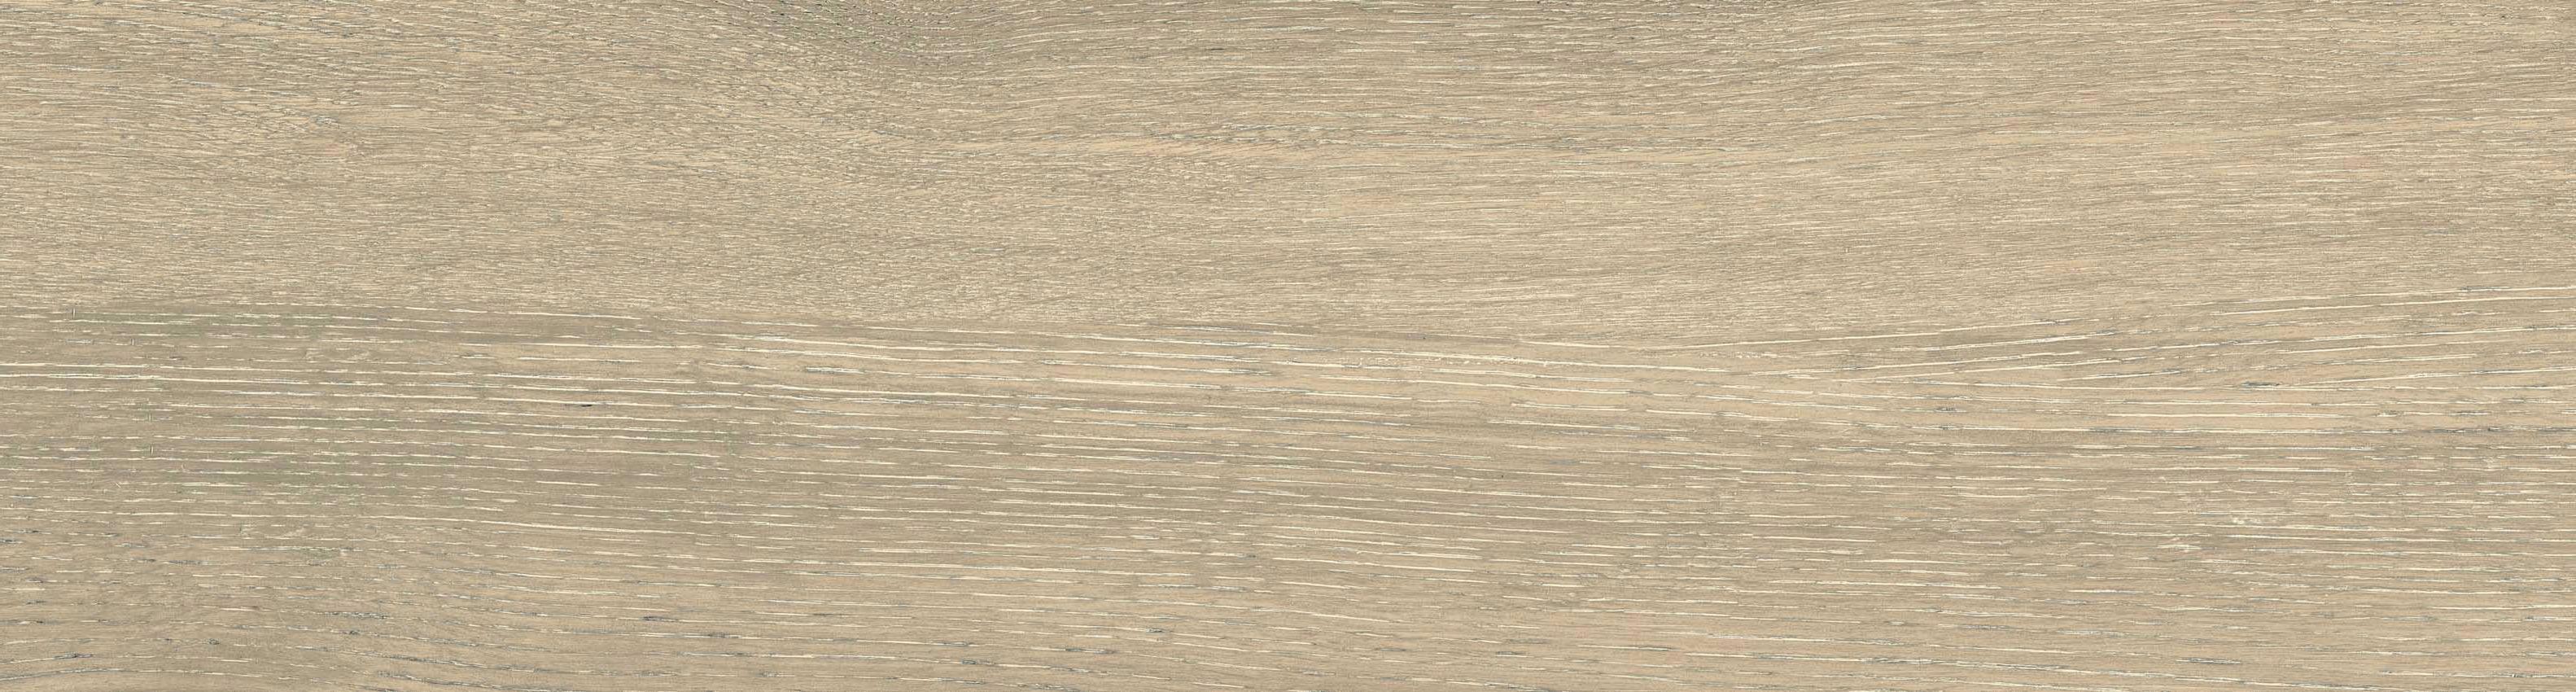 90484481 Керамогранит Dream Wood DW02 коричневый 14.6x60cм неполированный. ректифицированные края, цена за упаковку STLM-0246310 ESTIMA